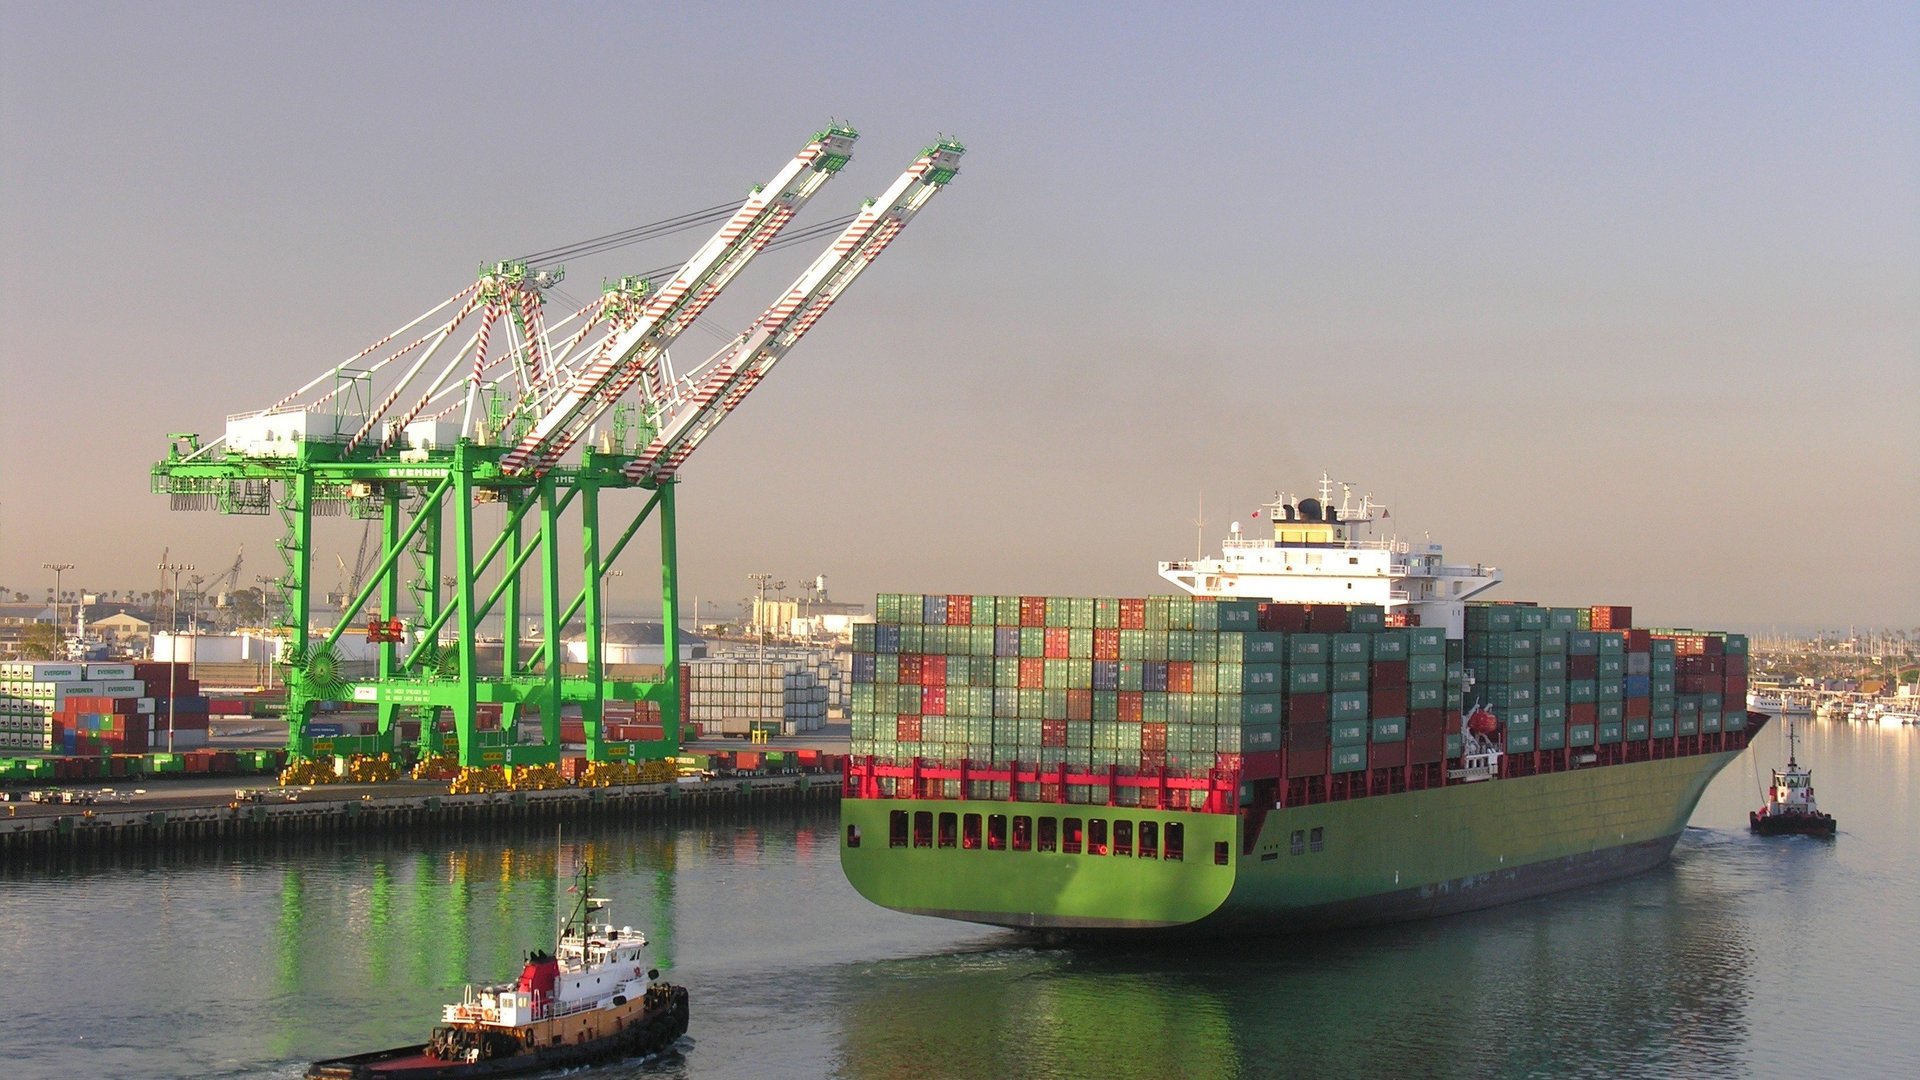 Einfahrt eines Containerschiffs in einen Hafen. Im Hintergrund stehen Kr?ne